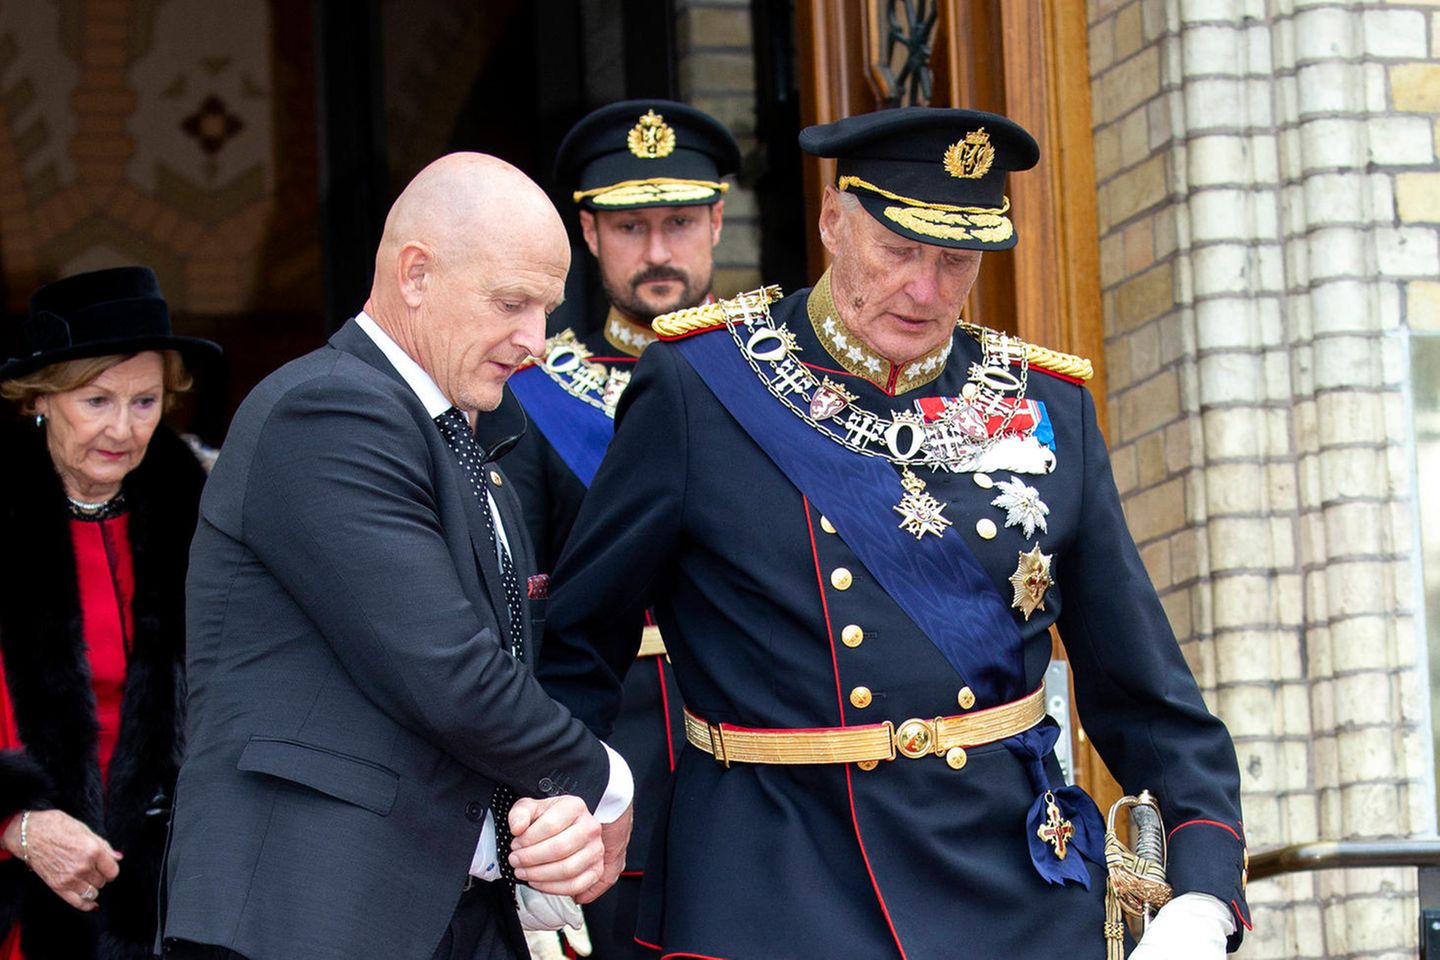 König Harald wird gestützt, hinter ihn gehen Königin Sonja und Prinz Haakon. Das Foto entstand im Oktober 2019.